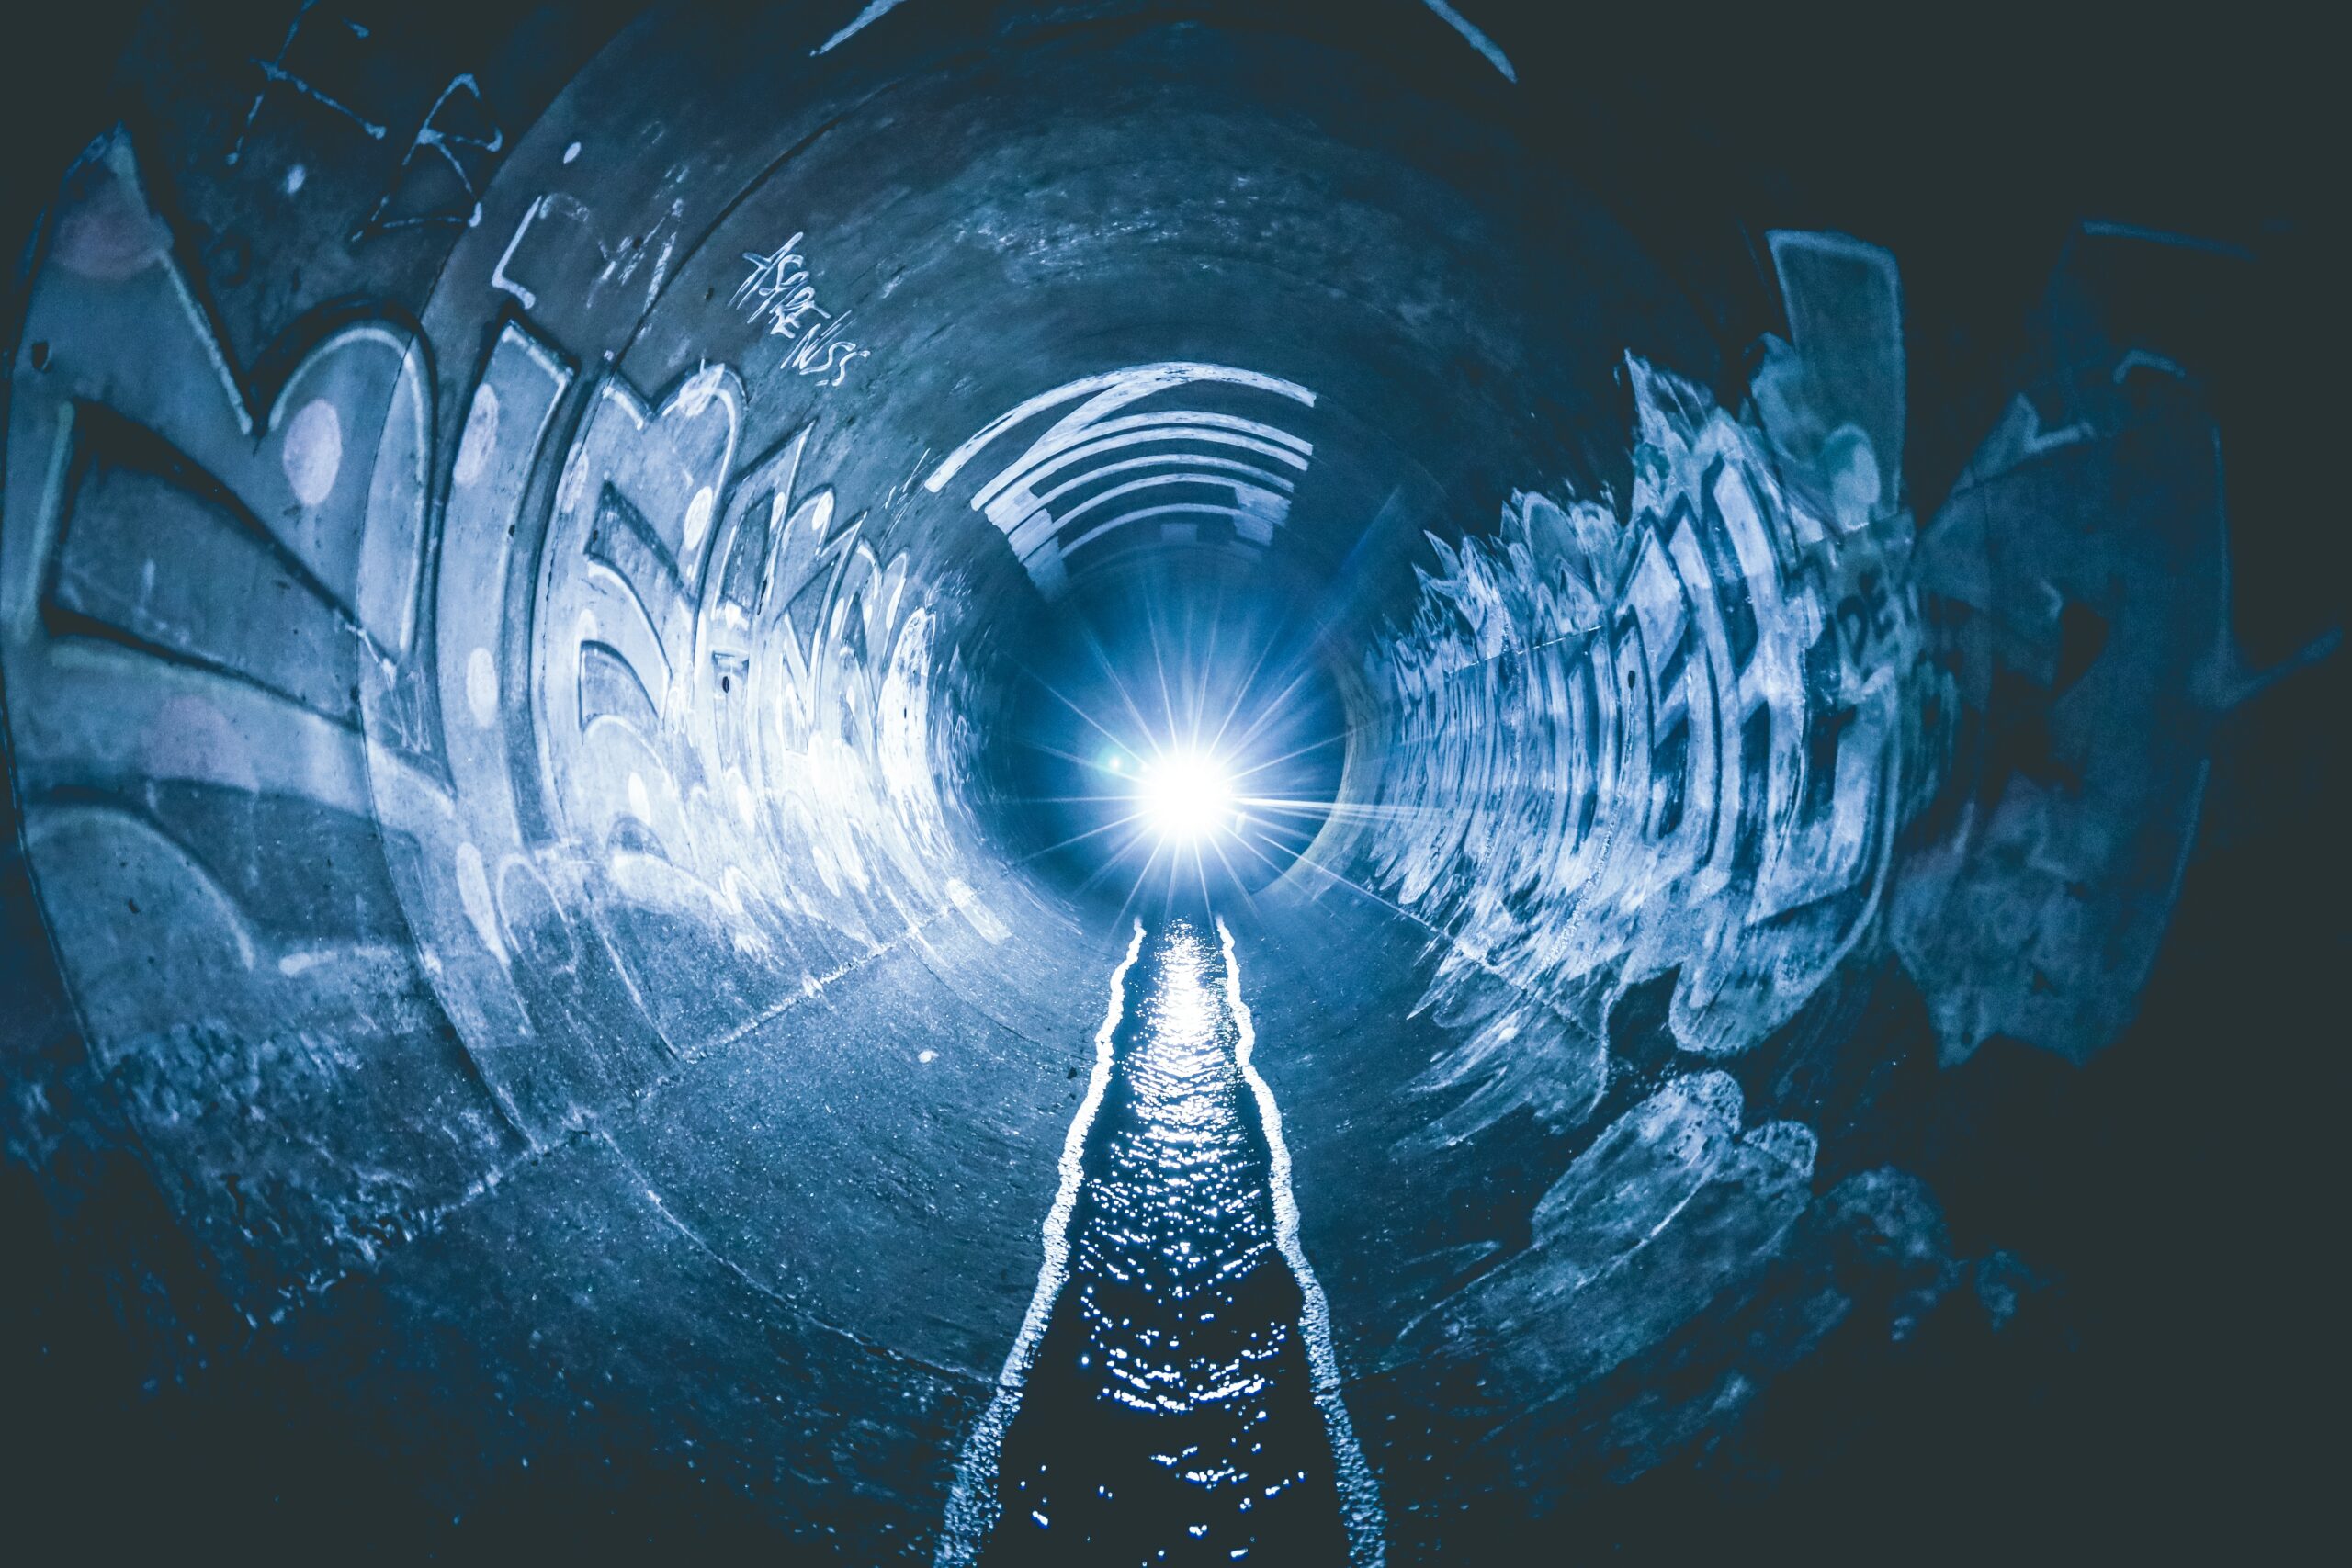 Bei Untertagarbeiten in Kanälen, Schächten, Stollen und Tunnels kann Personal gefährdet sein durch: Schwefelwasserstoff, Sauerstoffmangel, Kohlenmonoxid und Brennbare Gase.